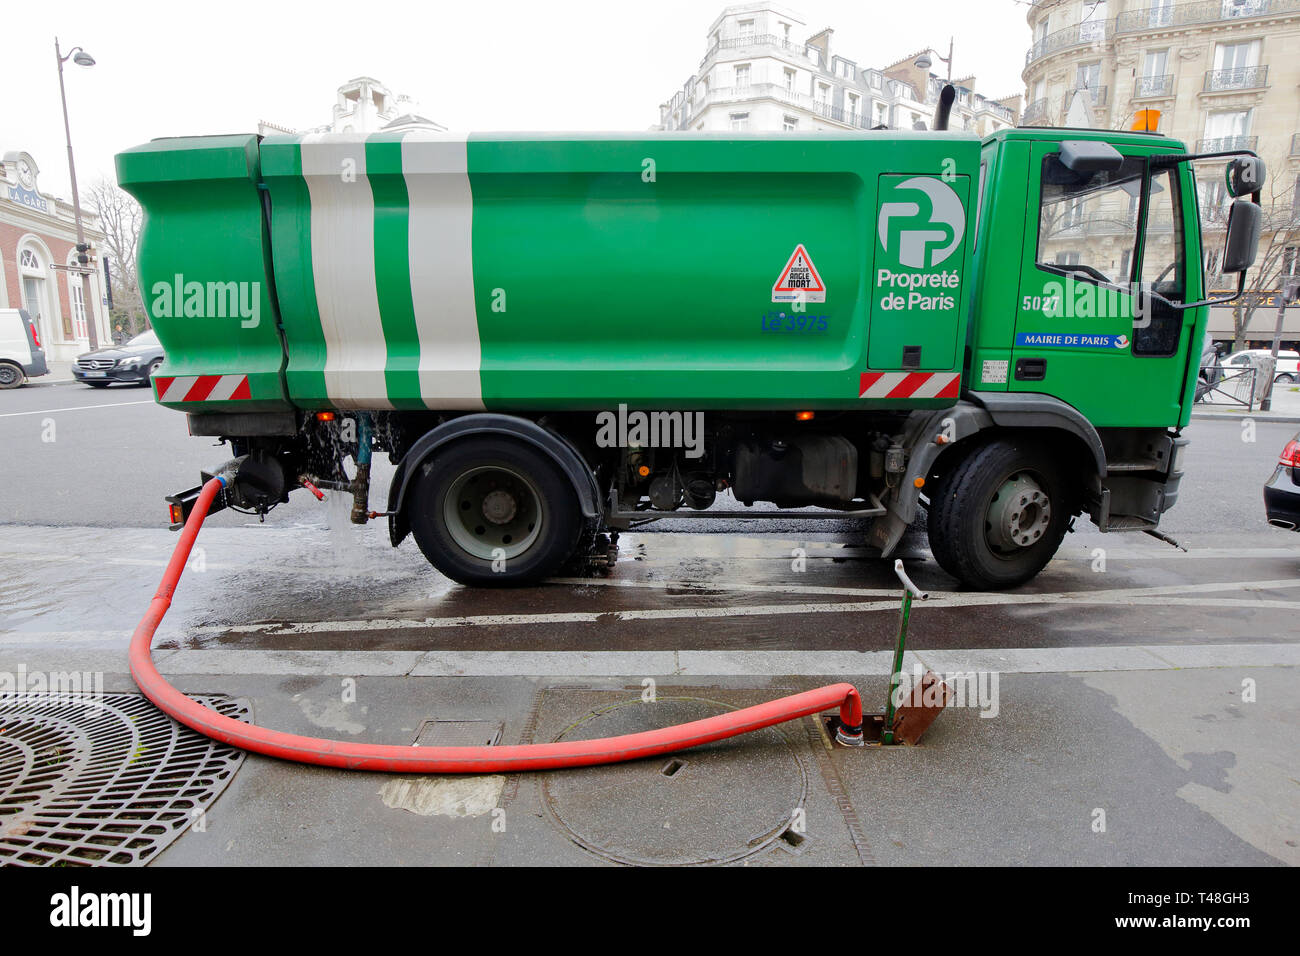 Un camion d'eau sanitaire de Paris propreté se remplit d'une bouche d'incendie au sol, Paris, France Banque D'Images